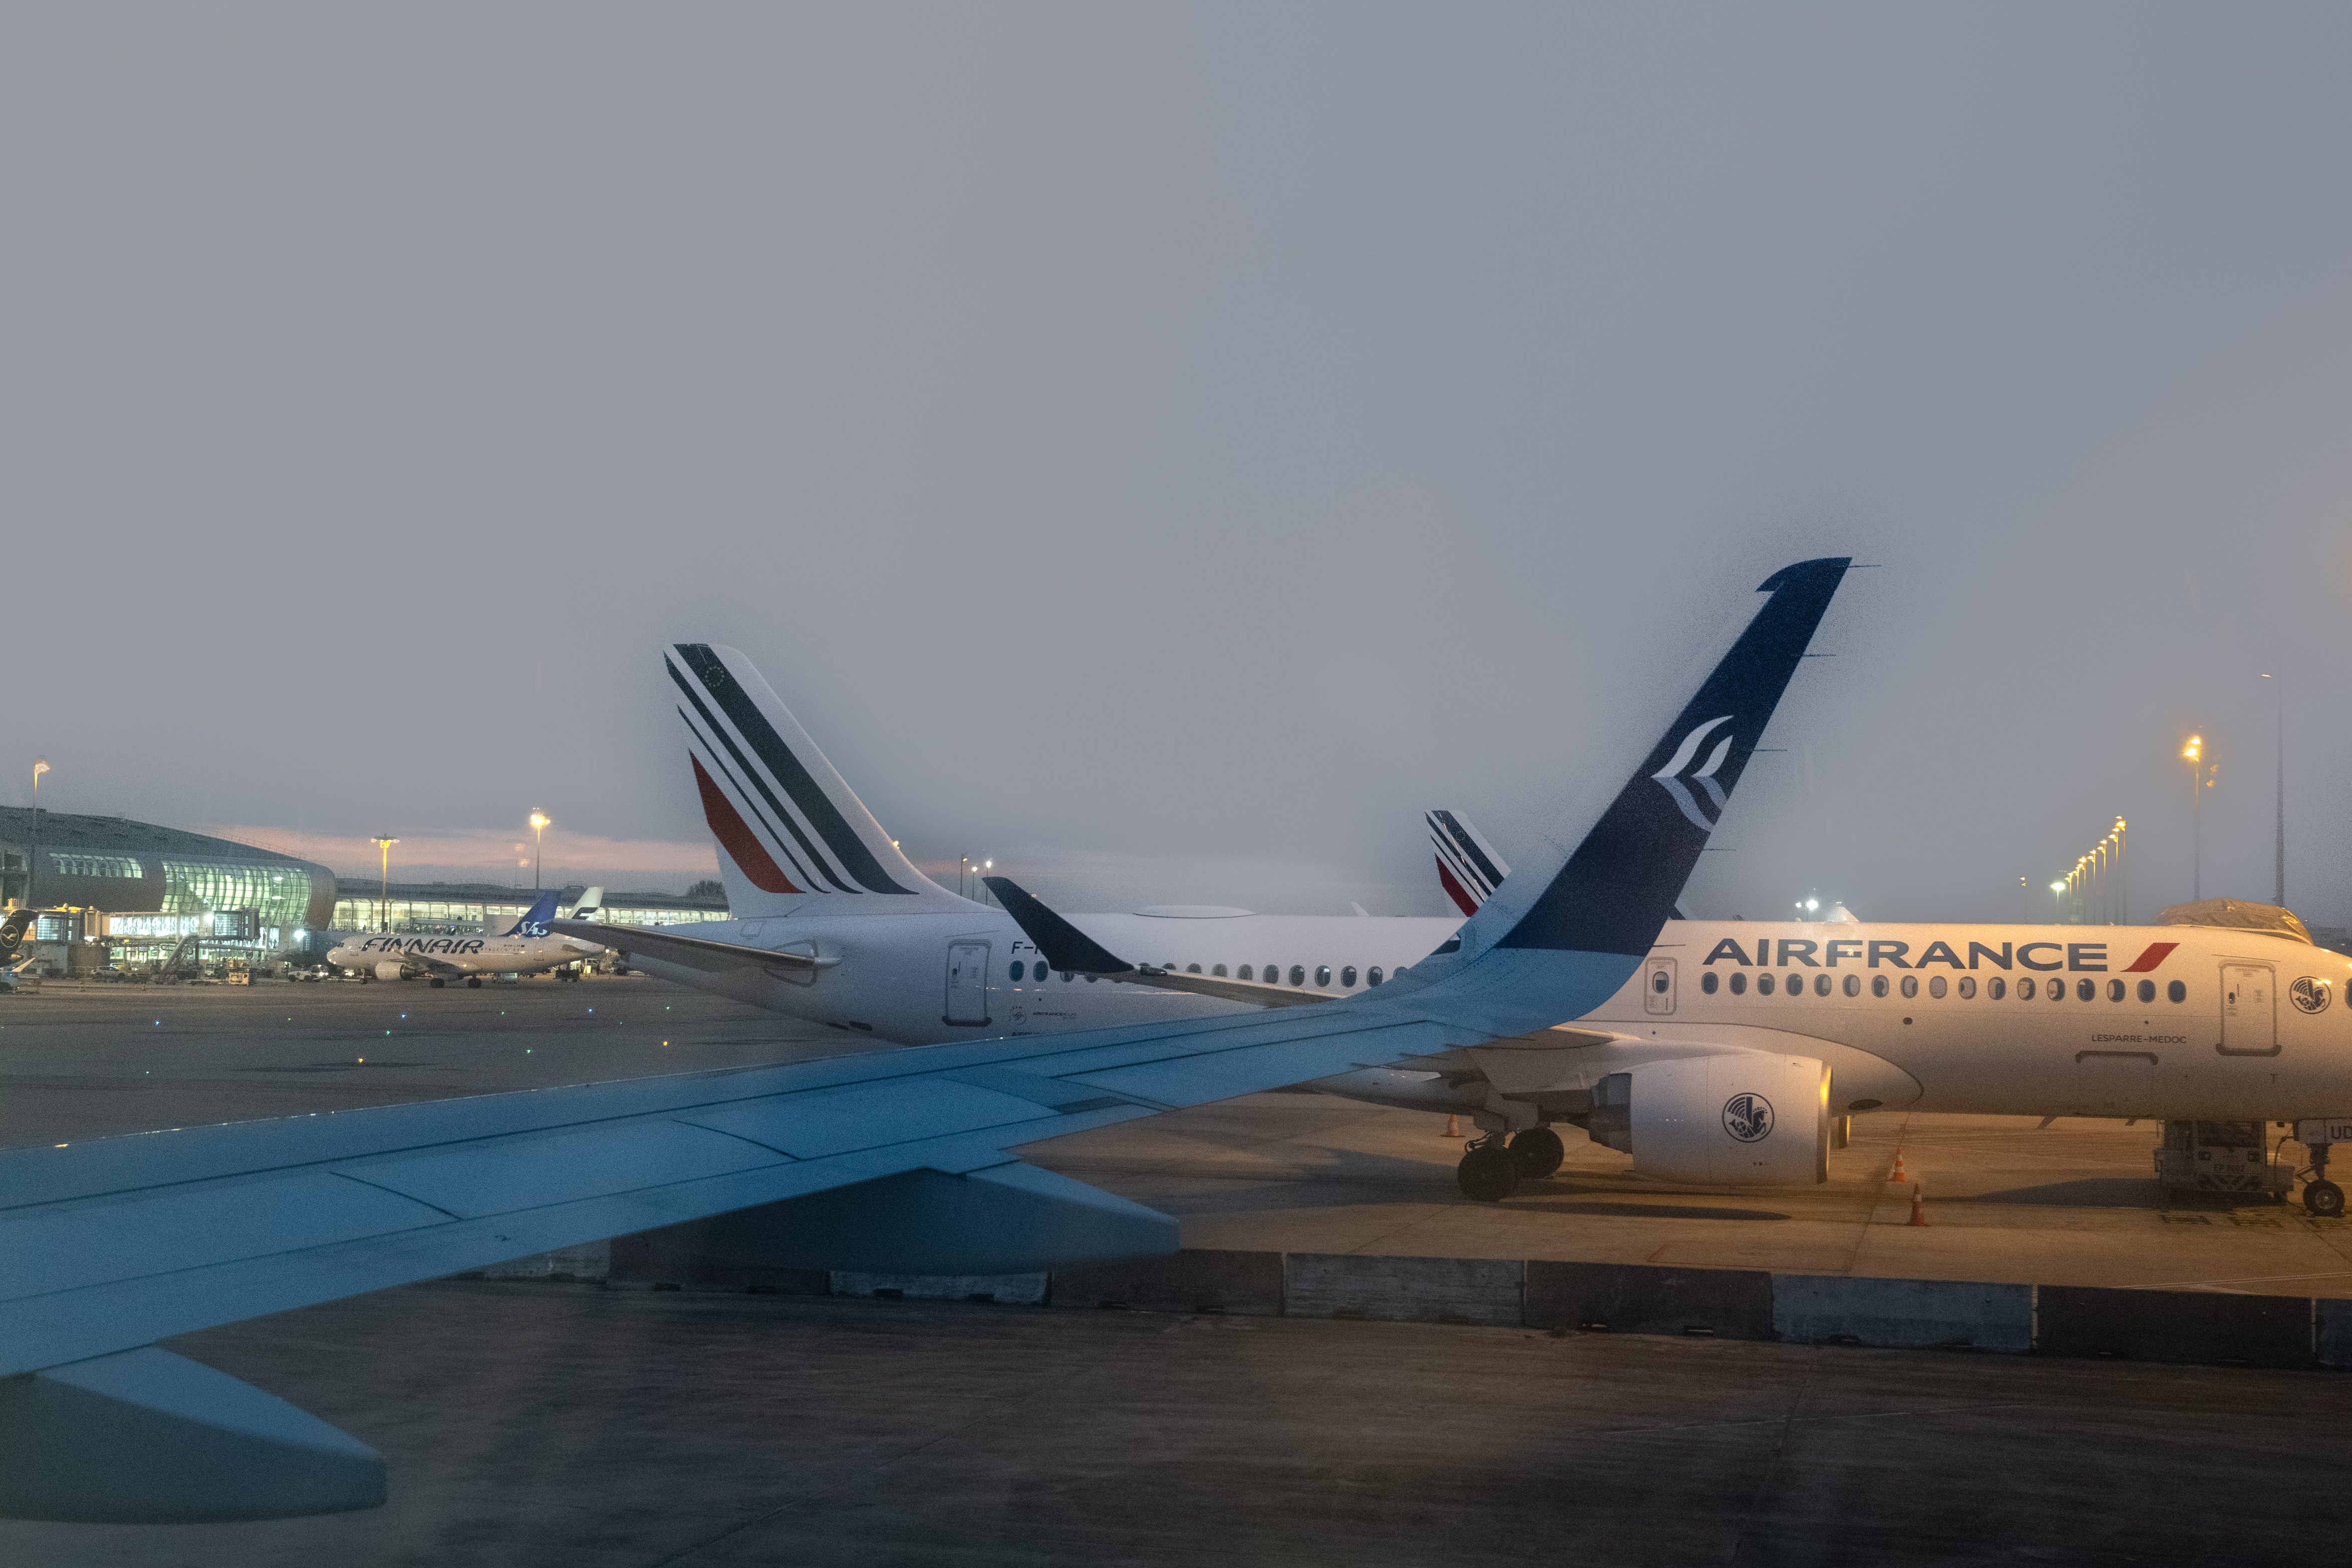 Pour les opposants à la suppression des vols intérieurs, Paris a bel et bien reculé